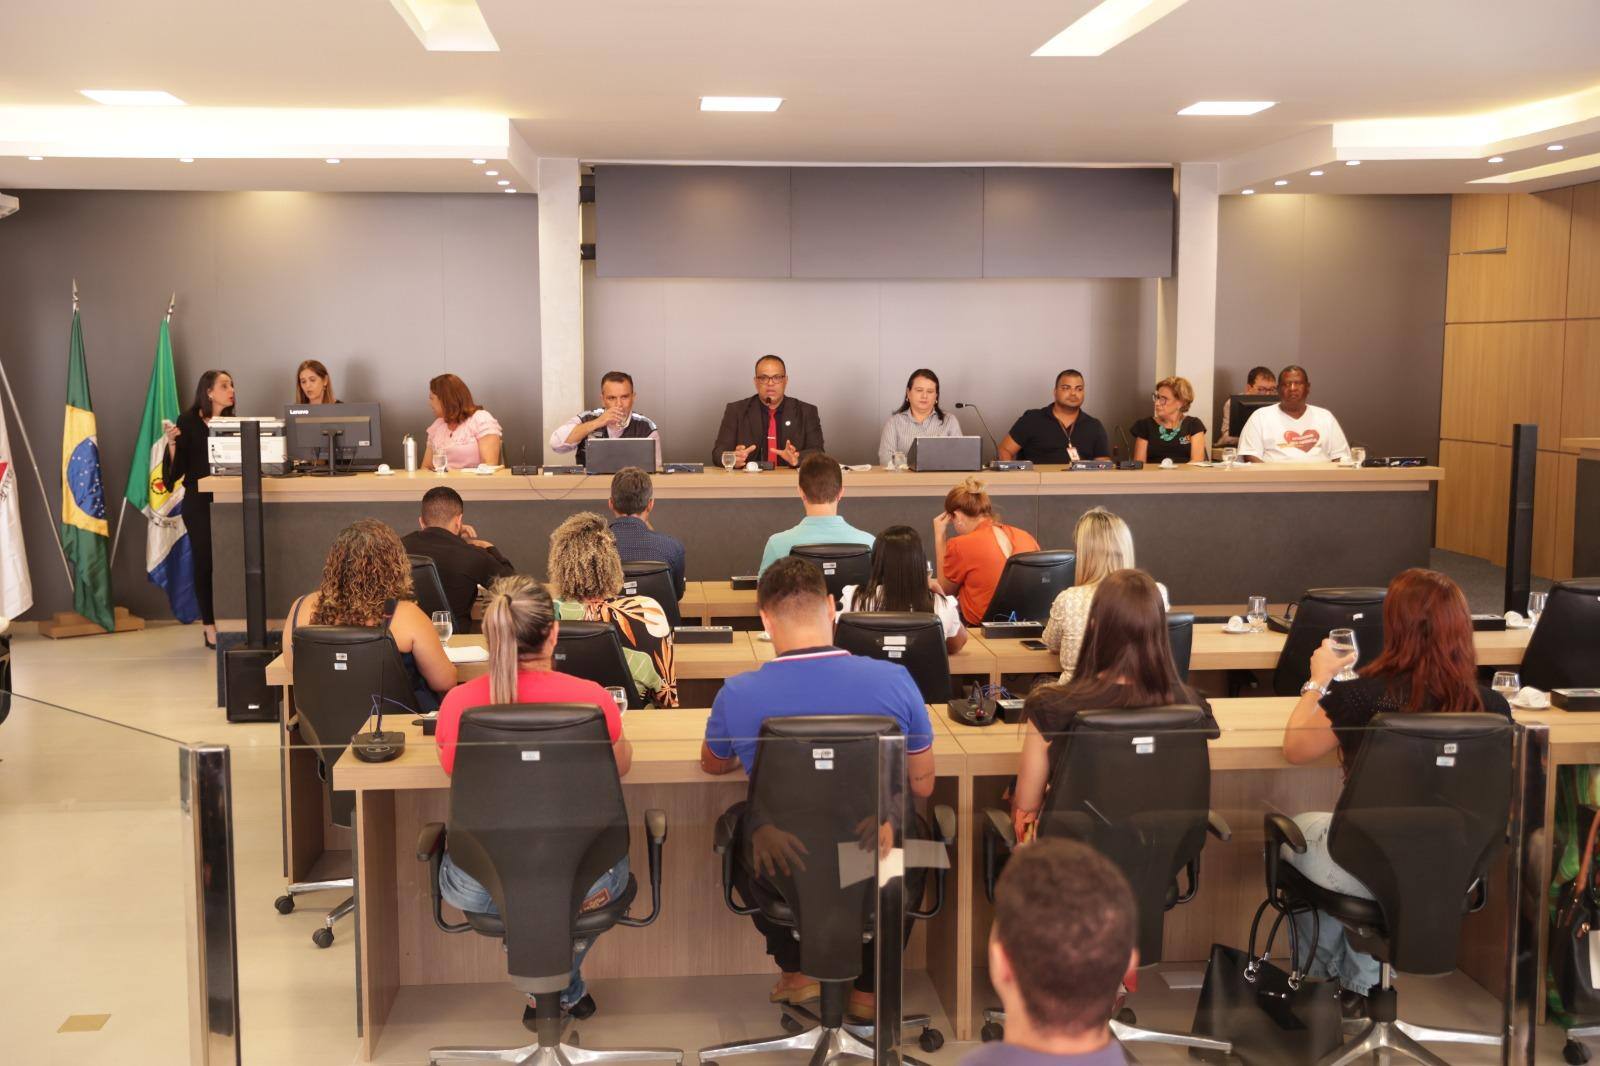 Audiência pública reuniu políticos, dirigentes e sociedade civil no plenário Camilo Saraiva, na Câmara Municipal de Betim